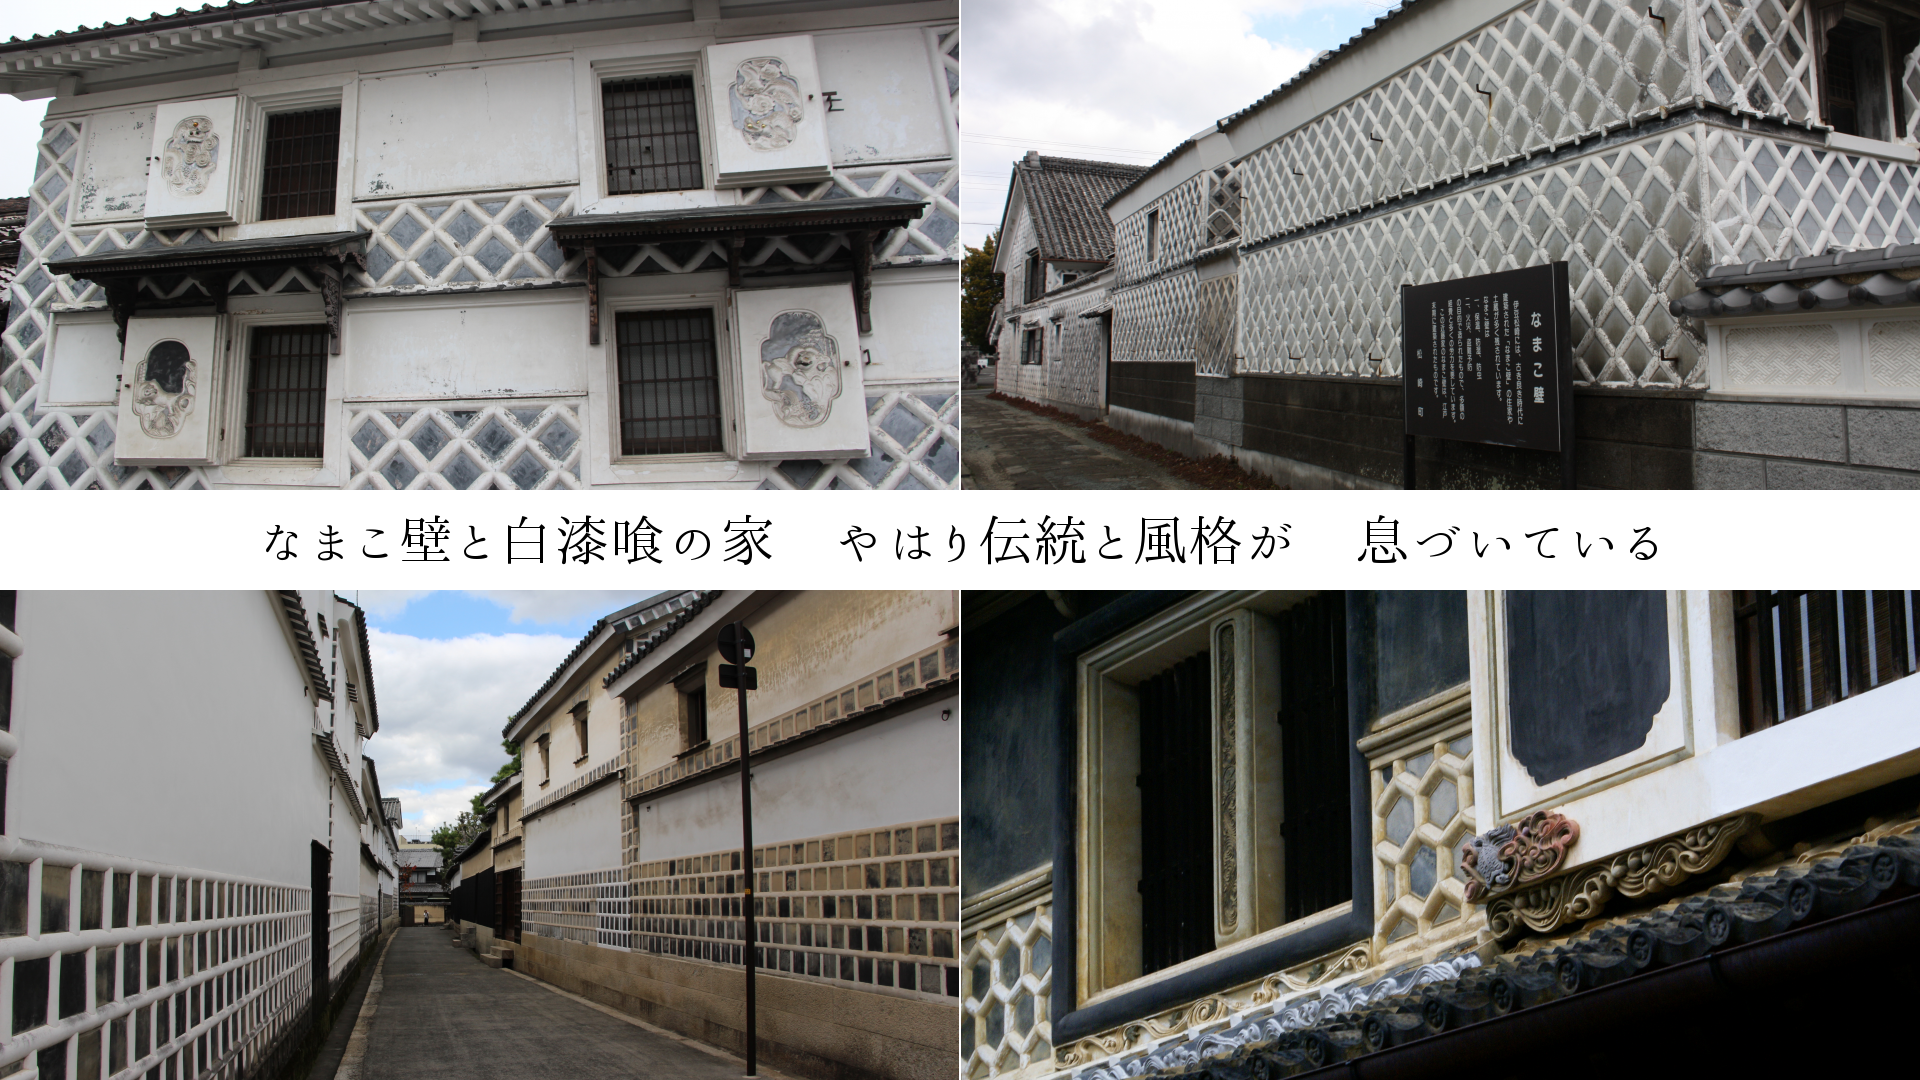 なまこ壁と白漆喰の家　やはり伝統と風格が　息づいている